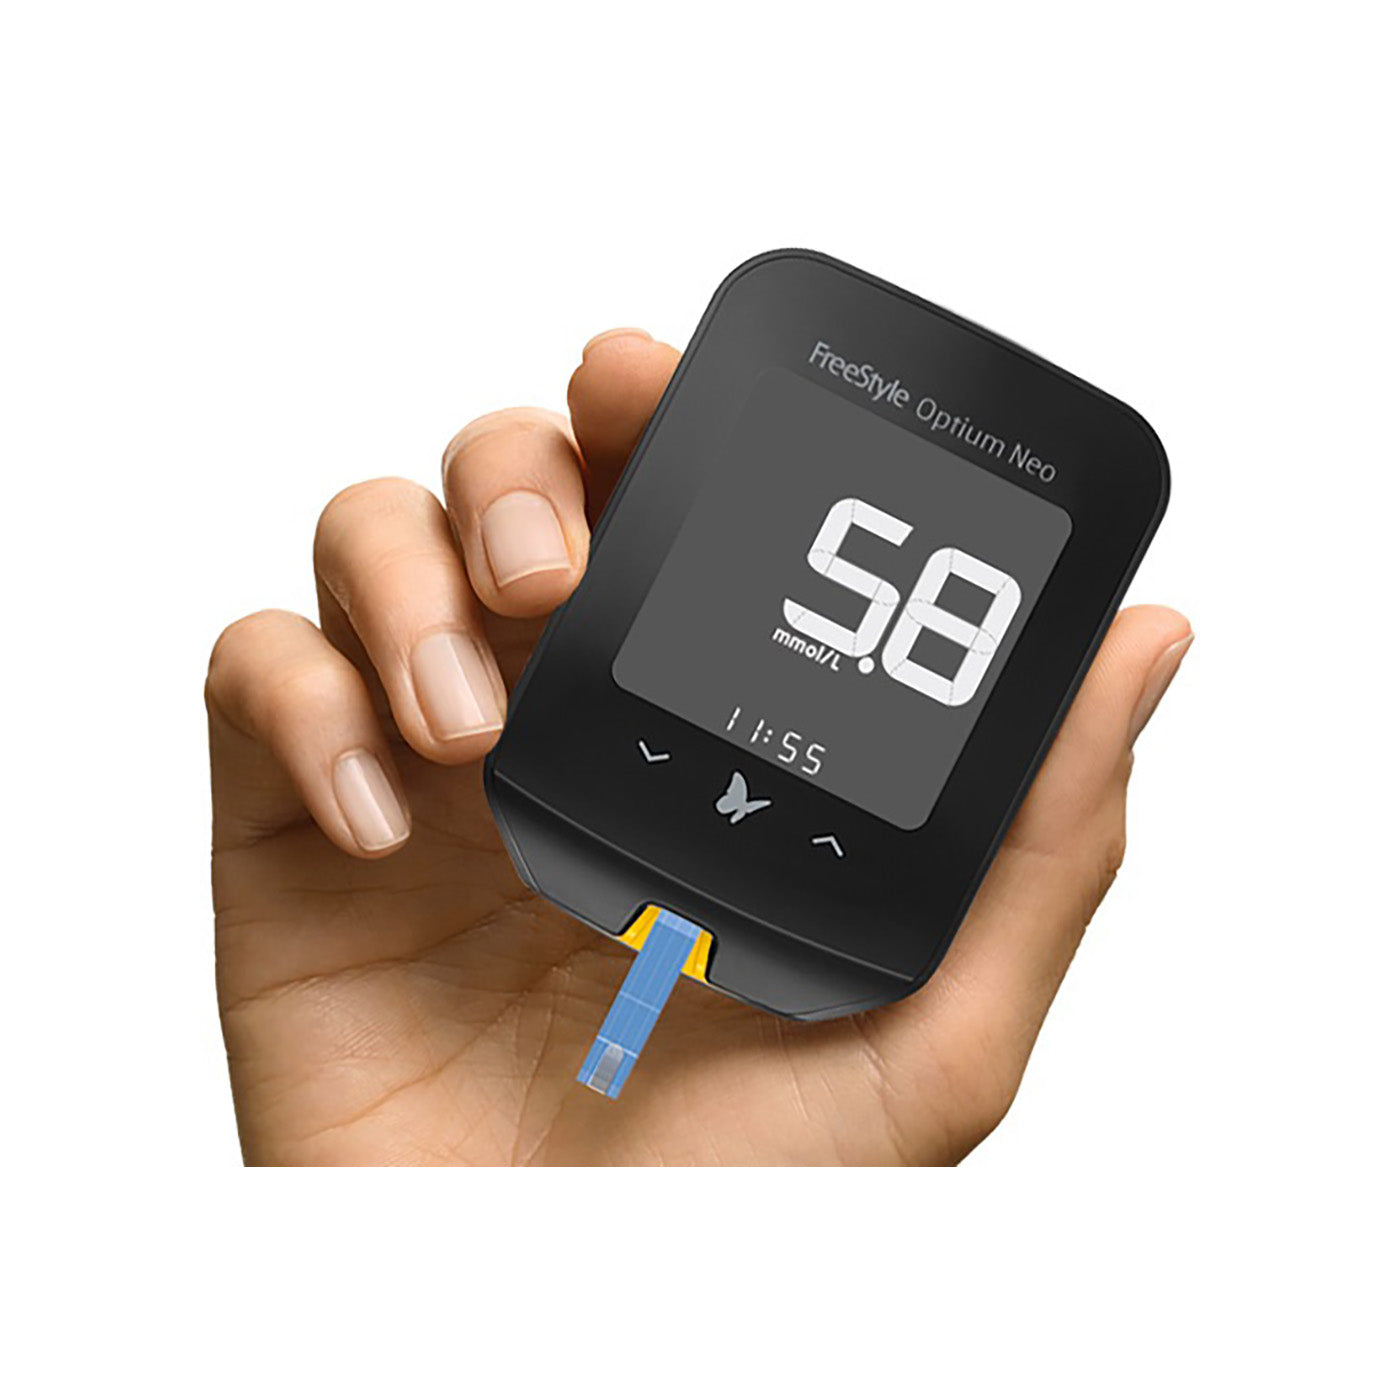 FreeStyle Optium Neo Blood Glucose Monitor